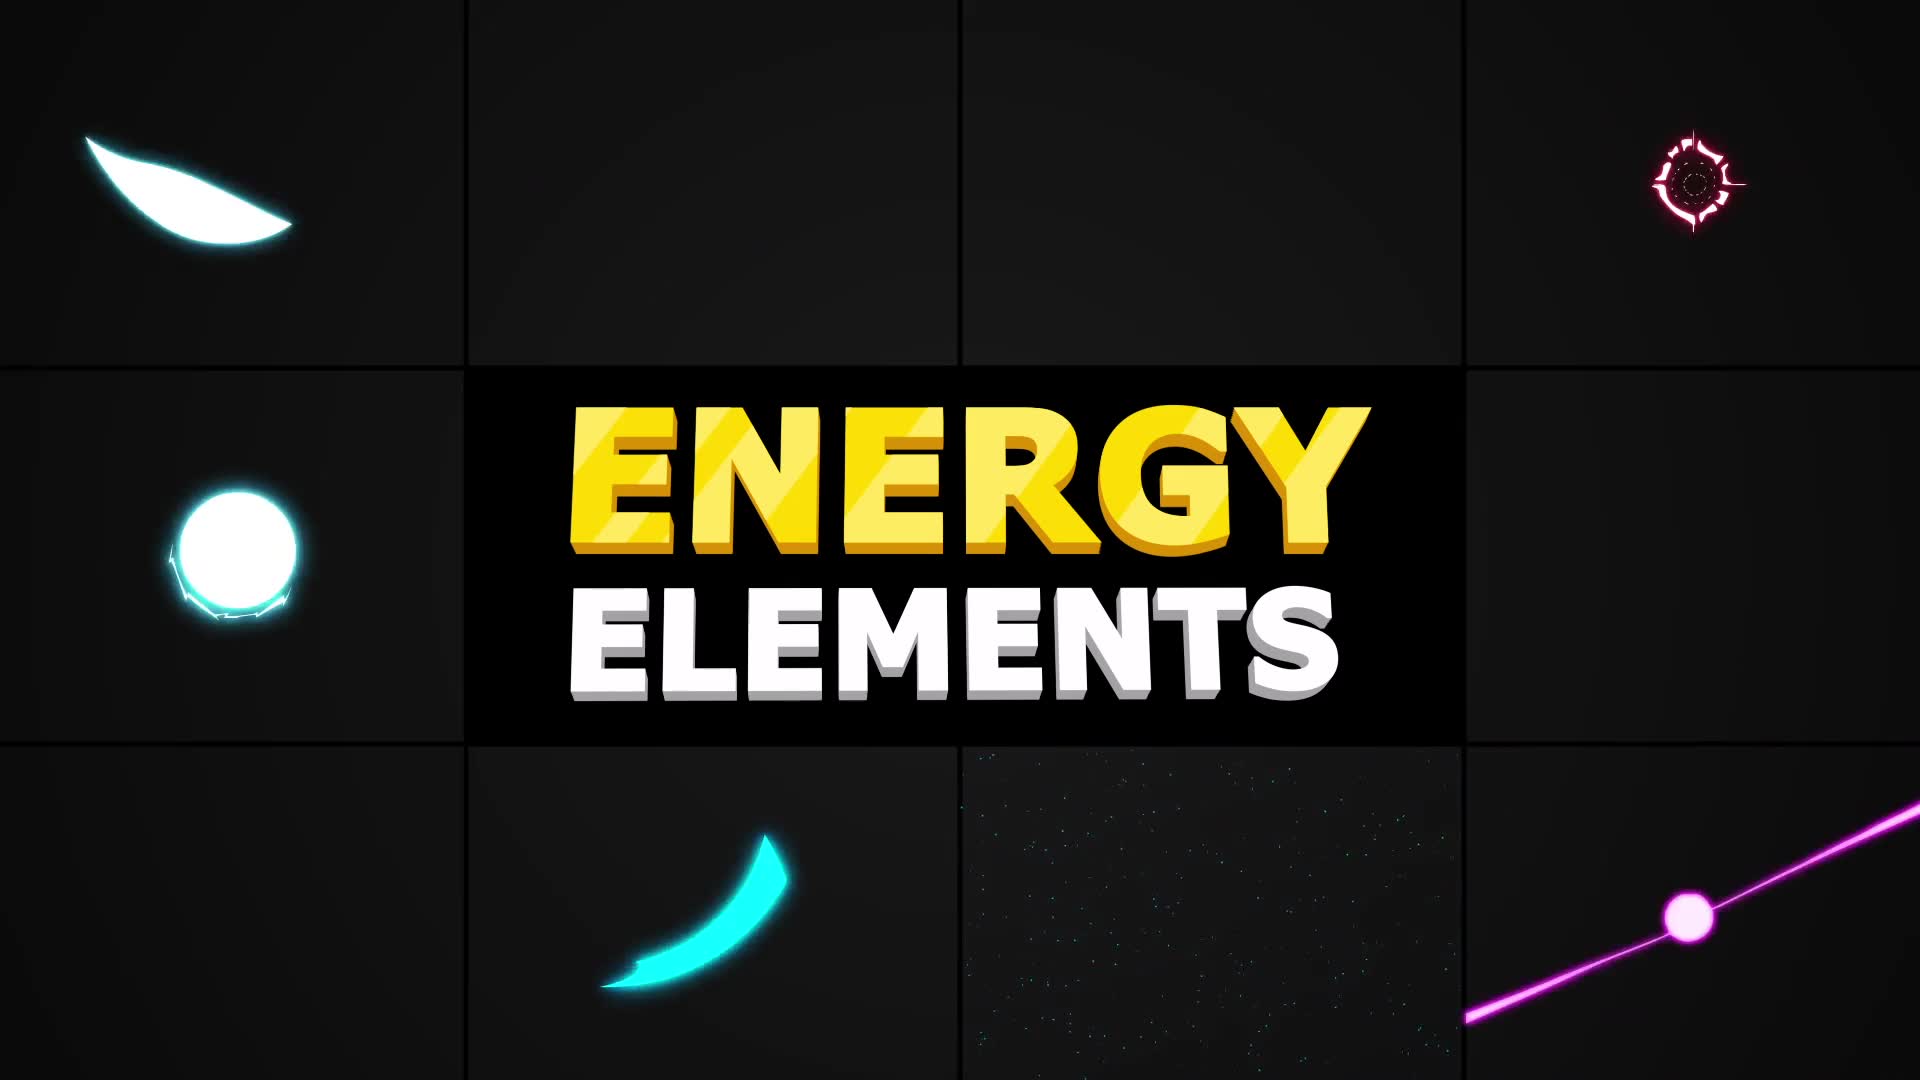 Energy Elements | Premiere Pro MOGRT Videohive 33670183 Premiere Pro Image 2